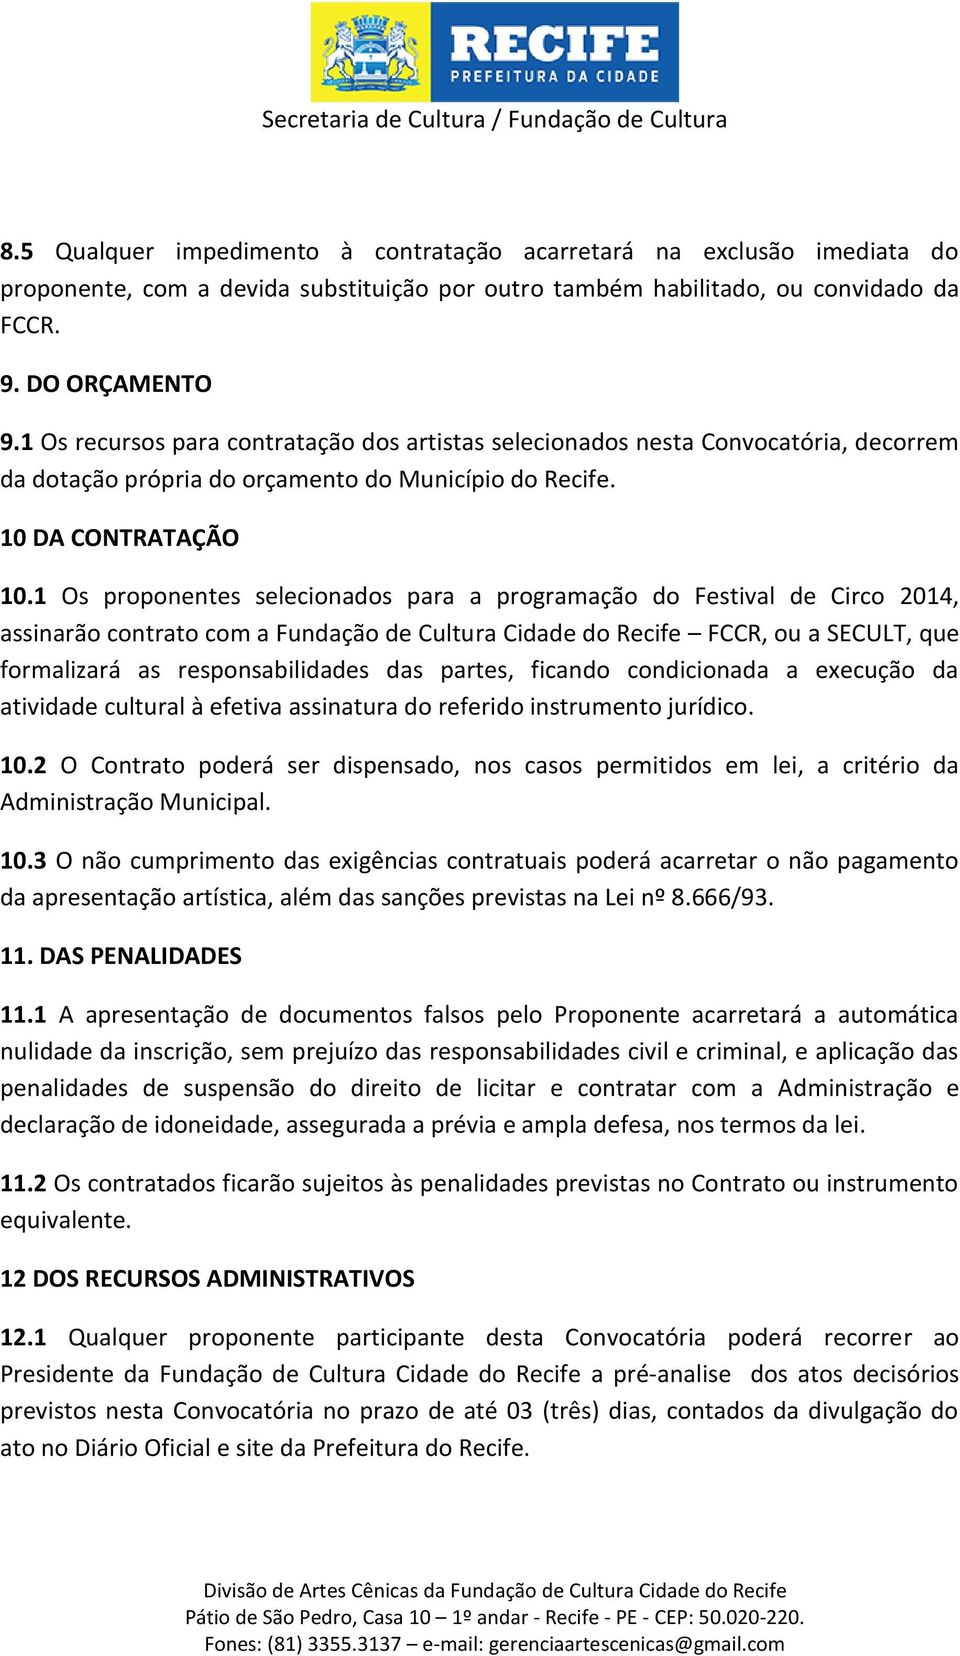 1 Os proponentes selecionados para a programação do Festival de Circo 2014, assinarão contrato com a Fundação de Cultura Cidade do Recife FCCR, ou a SECULT, que formalizará as responsabilidades das